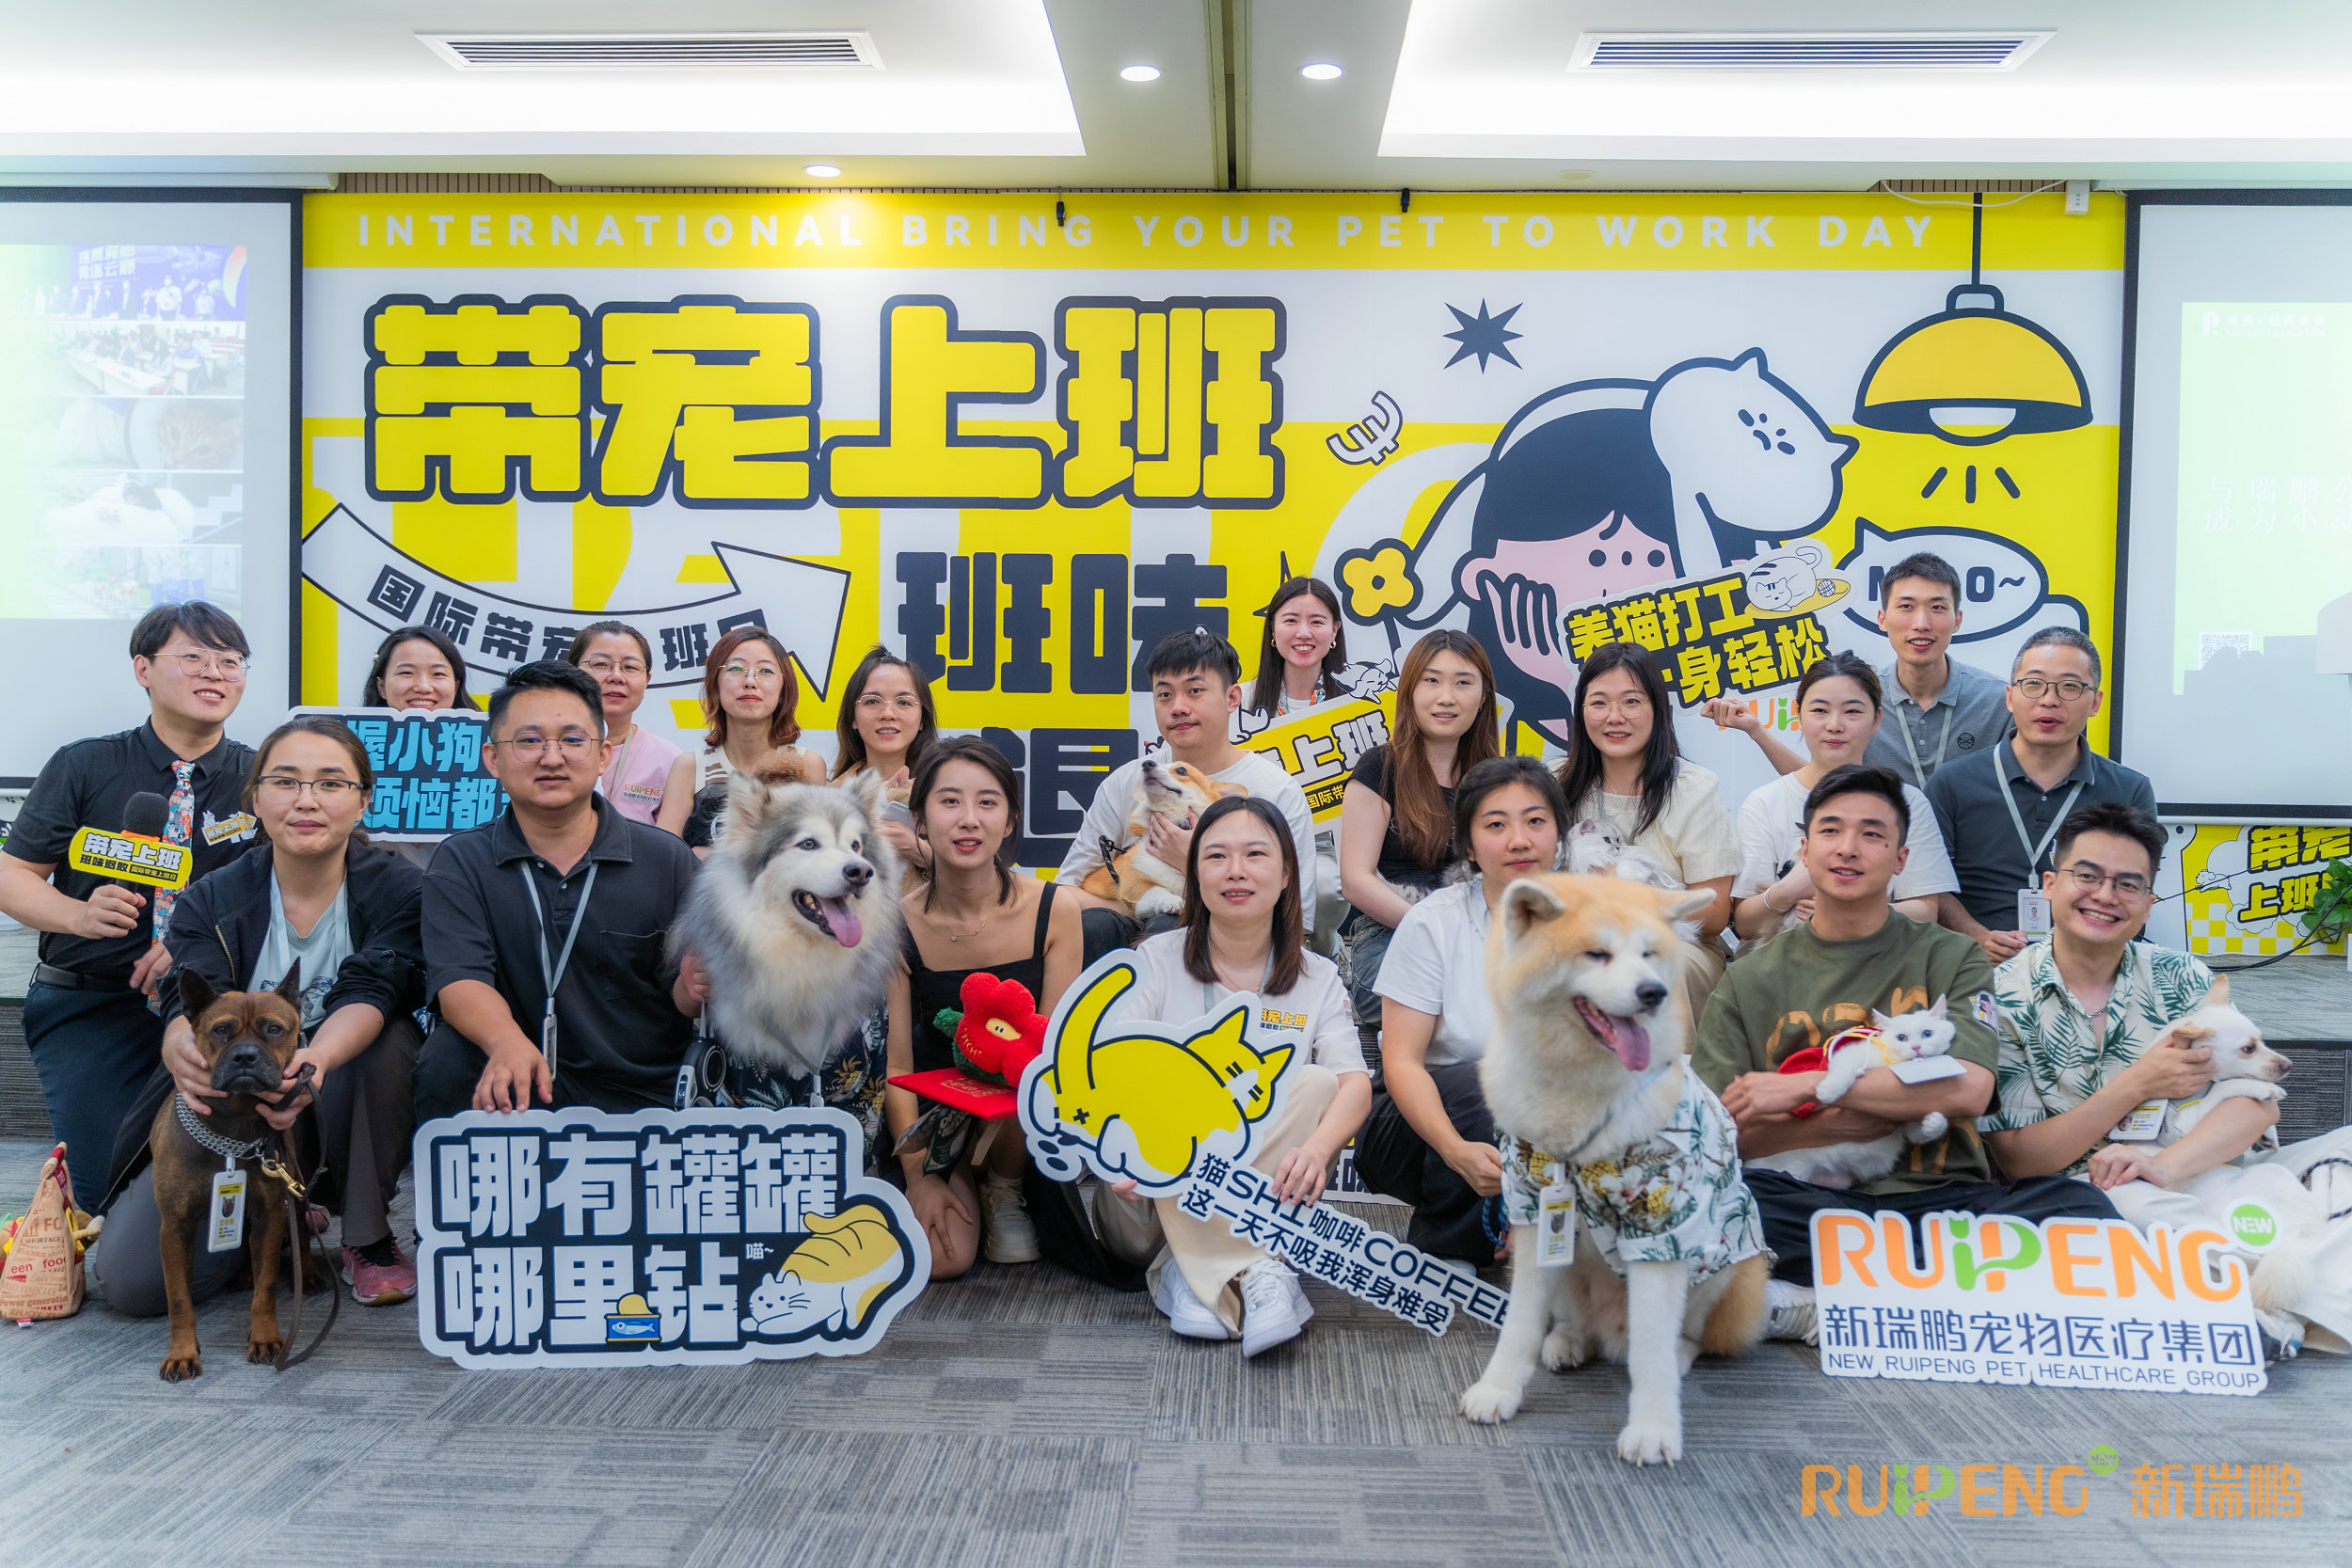 「帶寵上班日」 亞洲最大寵物醫療連鎖企業新瑞鵬創新員工關懷模式